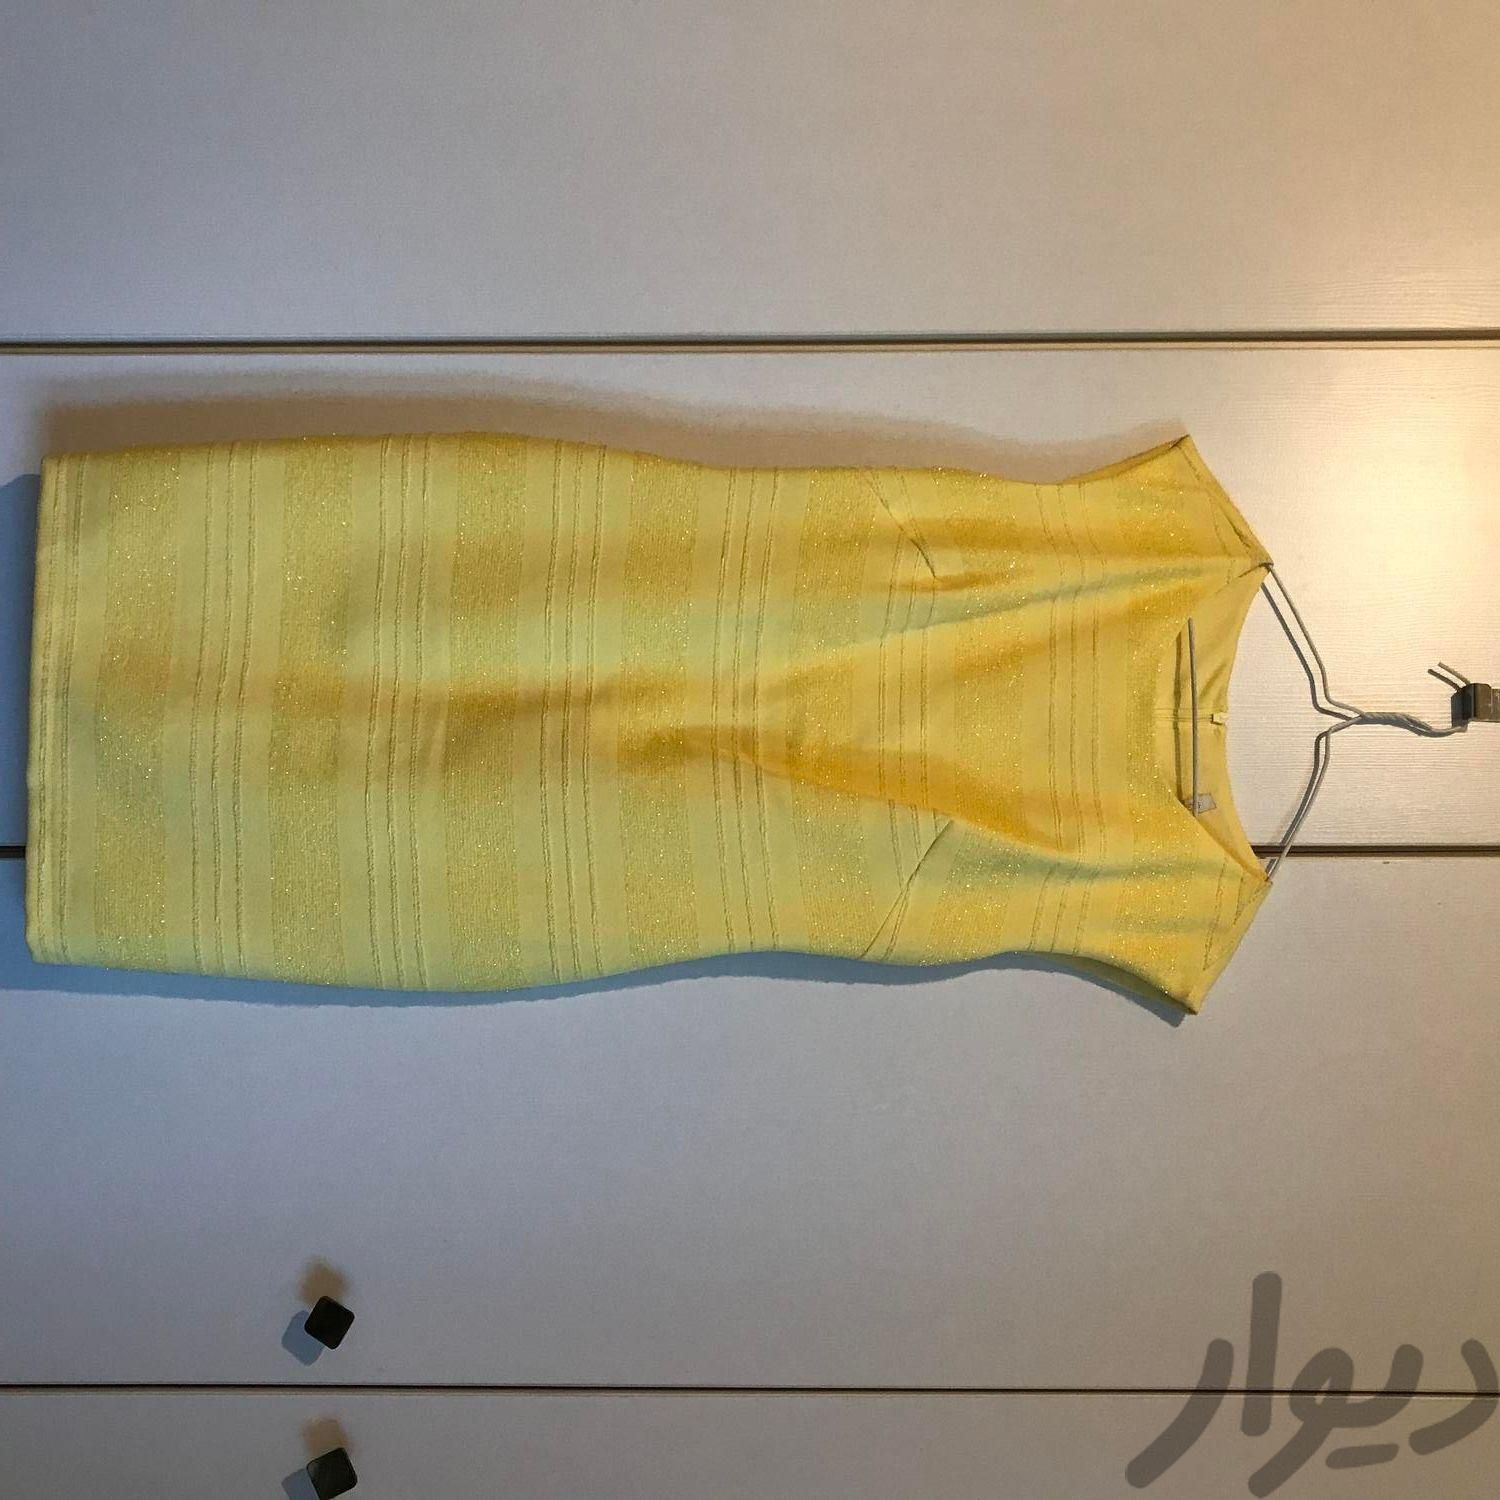 پیراهن مجلسی زرد و سورمه ای|لباس|تهران, شهرک آپادانا|دیوار